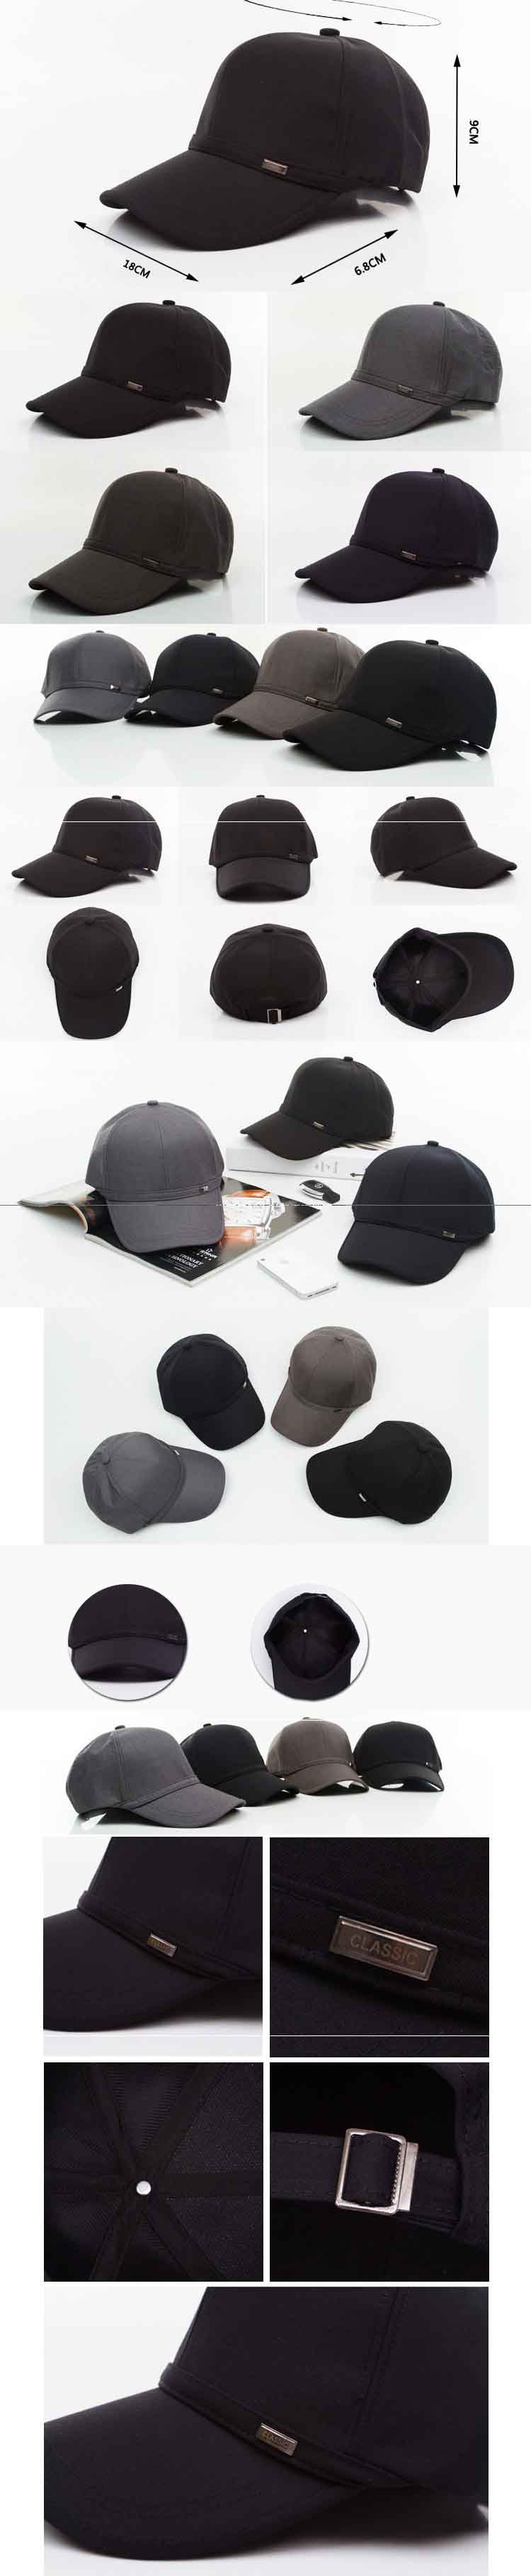 pfp store jual topi pria vintage model terbaru dengan kualitas import, temukan koleksi topi pria terlegkap hanya di pfp store